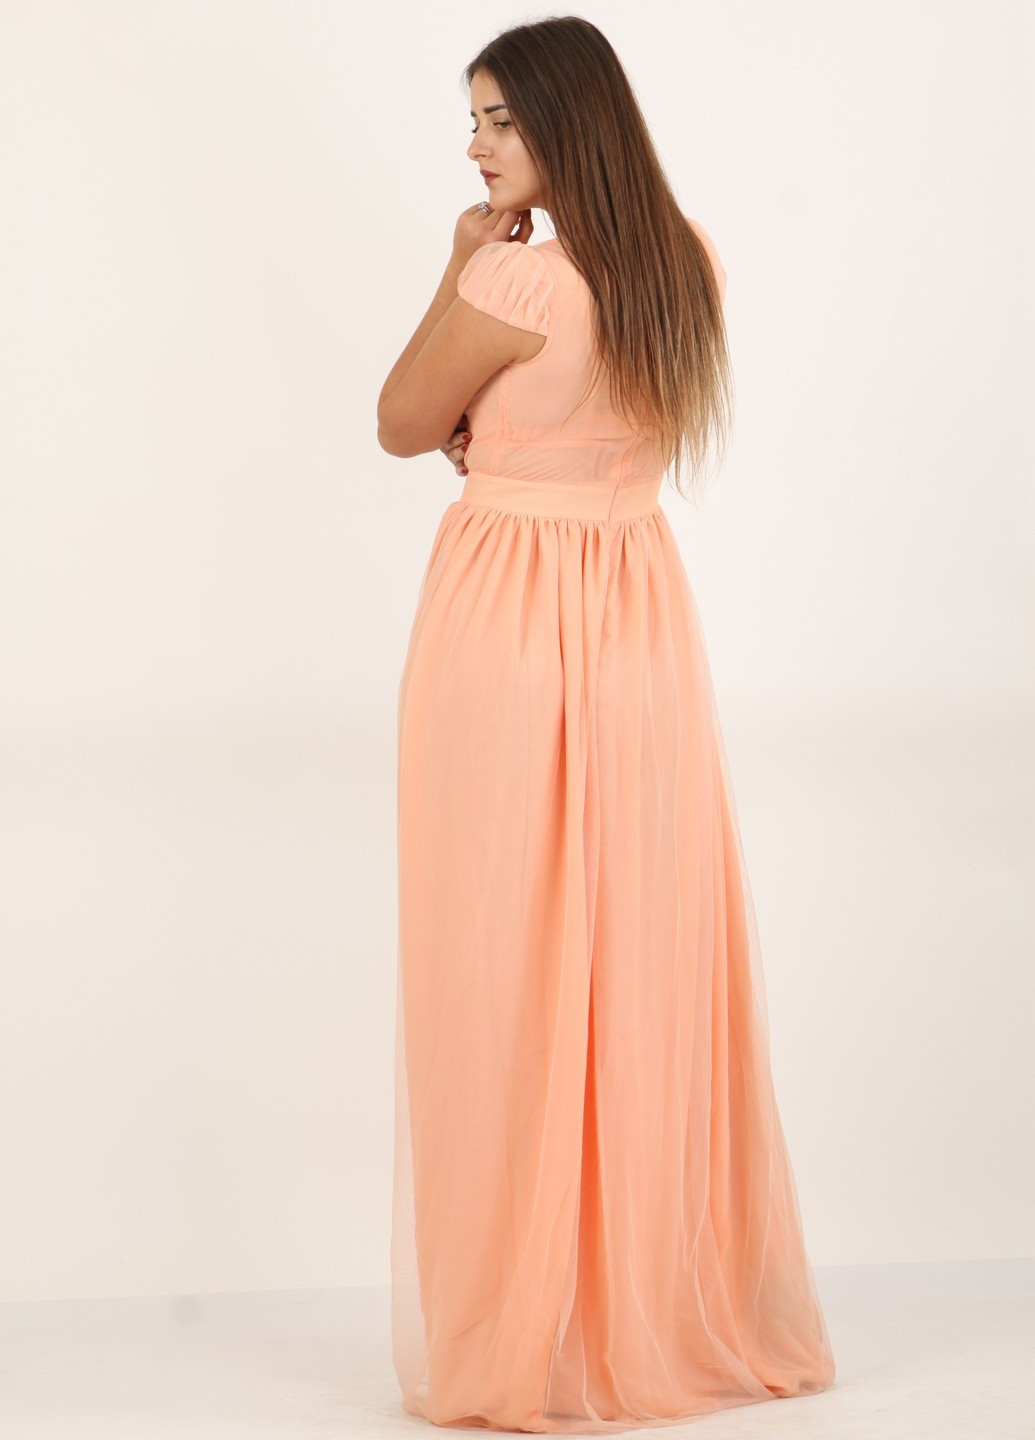 Персикова вечірня плаття, сукня Enna Levoni однотонна